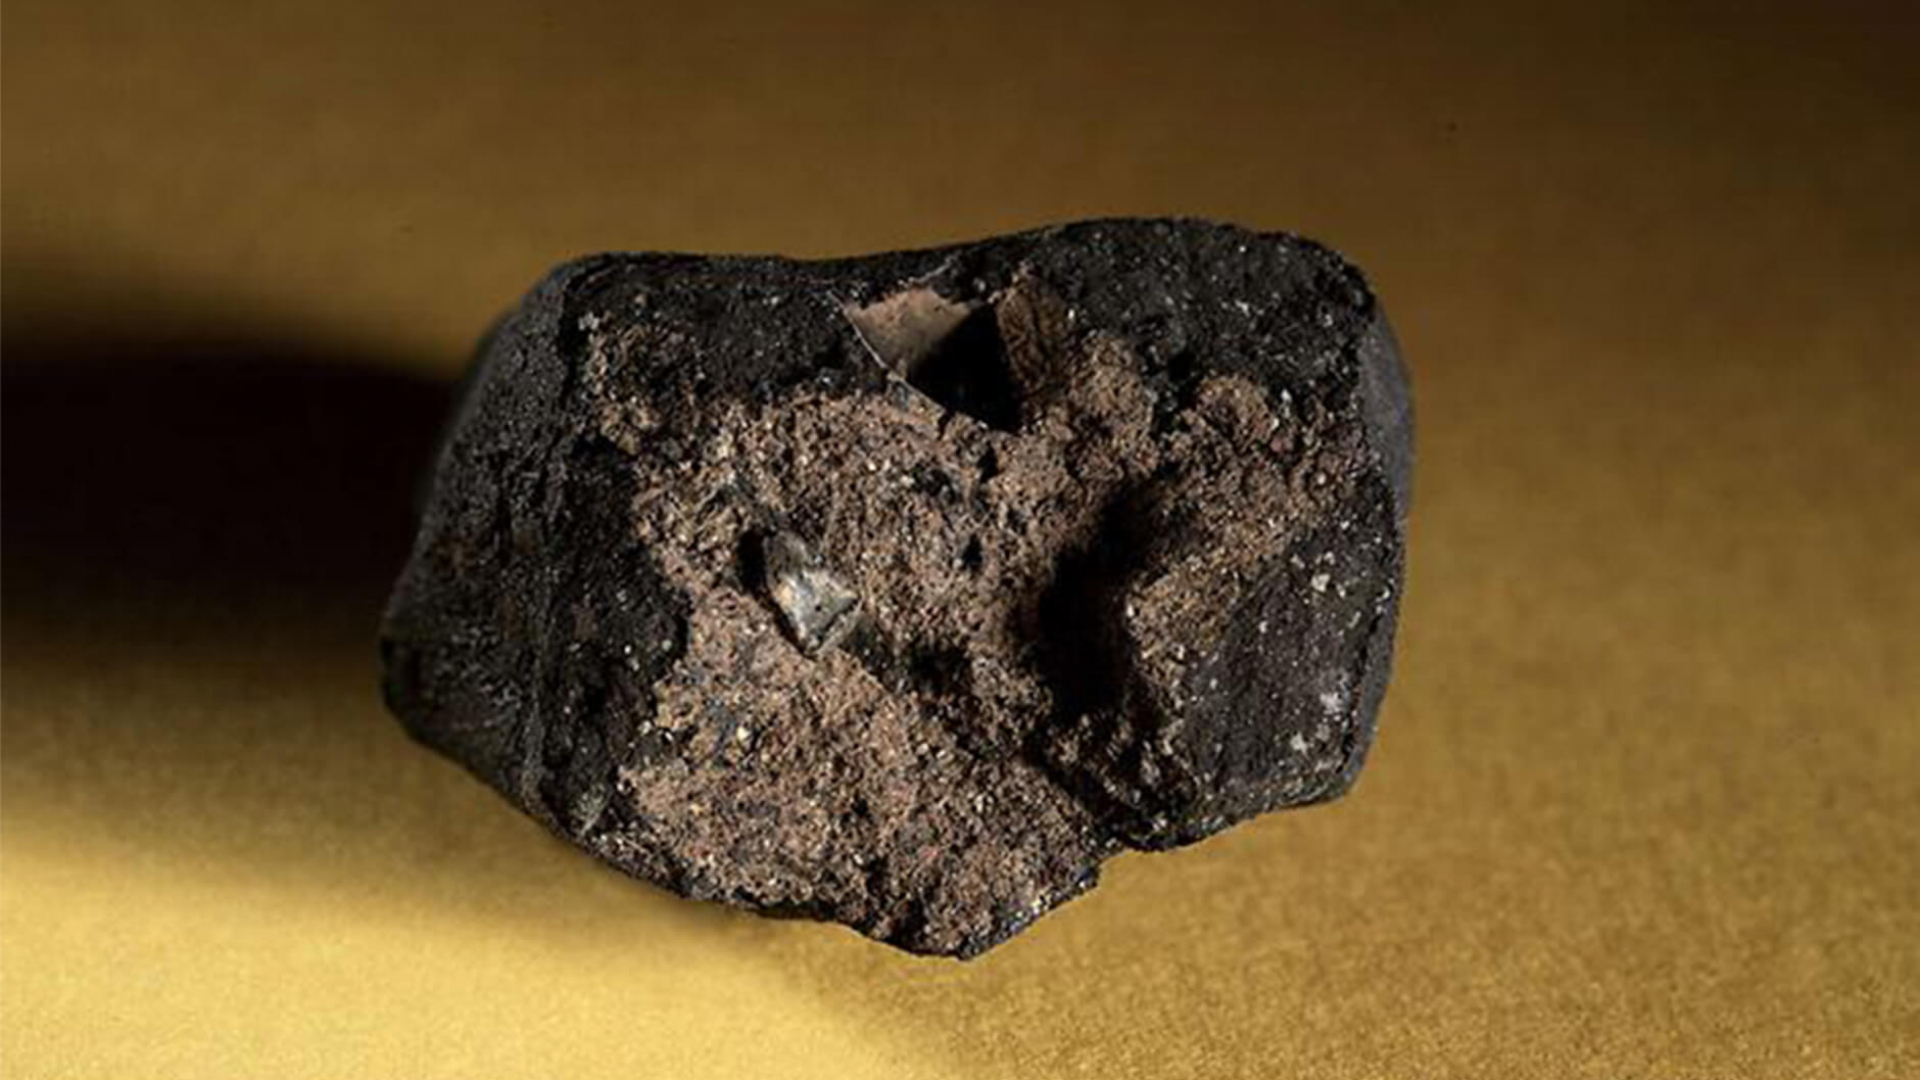 Tagish Lake meteorite.